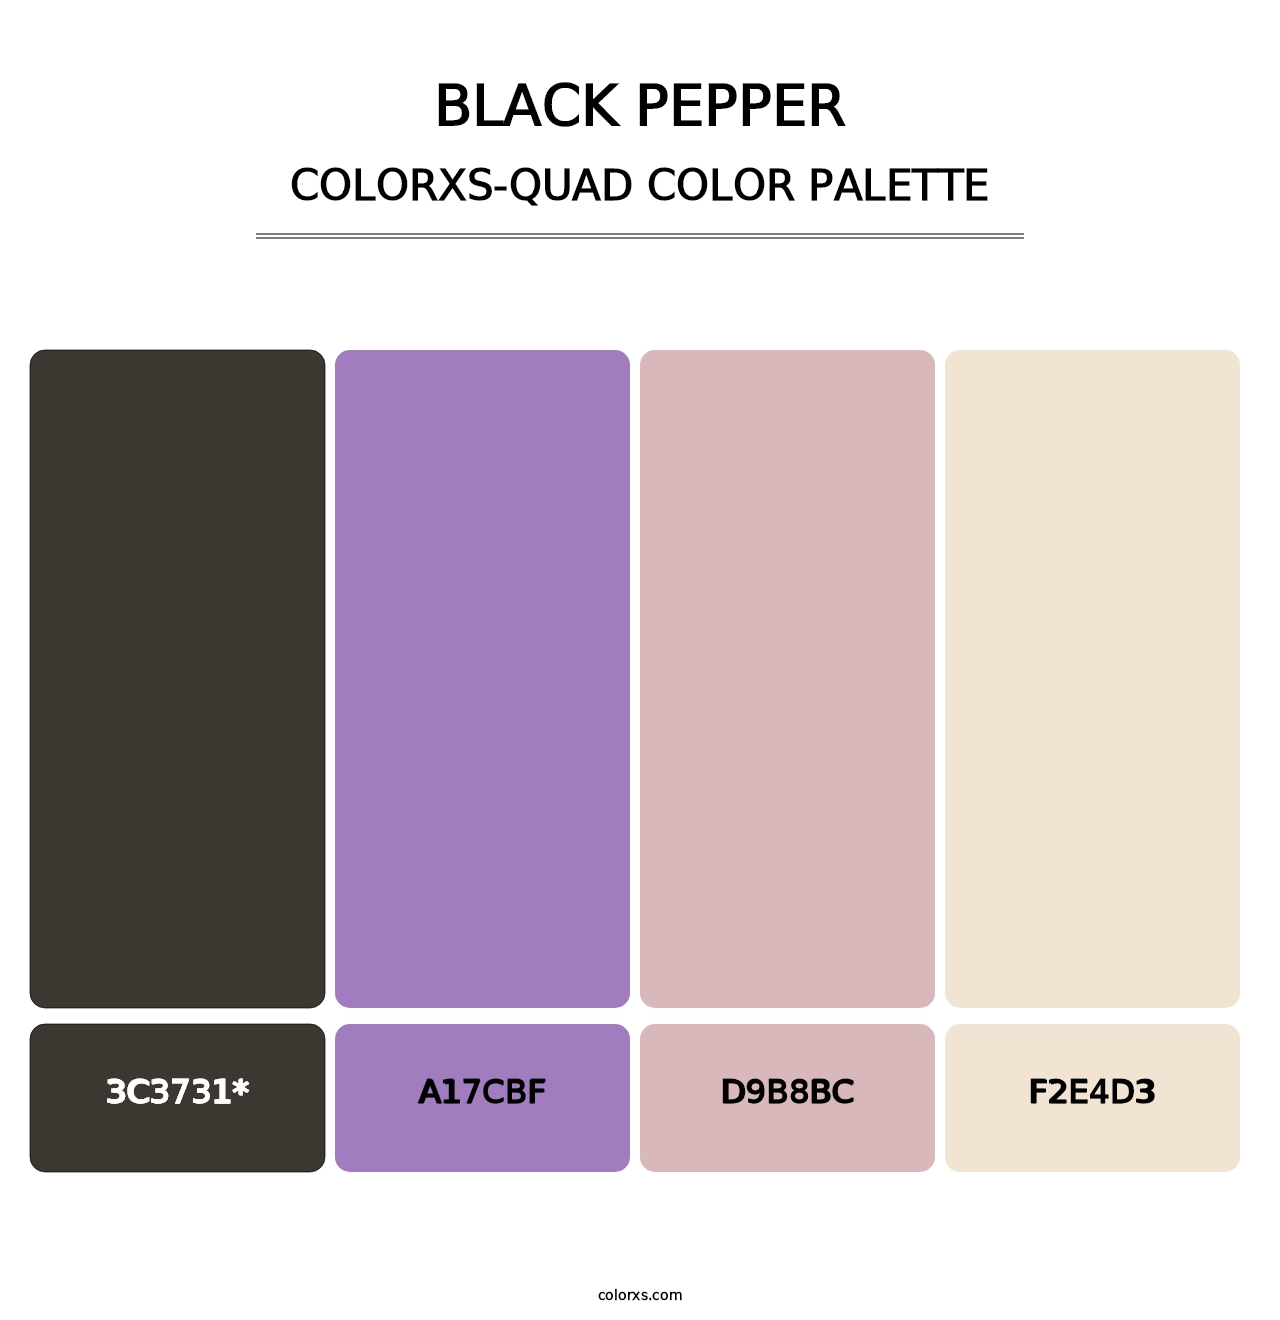 Black Pepper - Colorxs Quad Palette